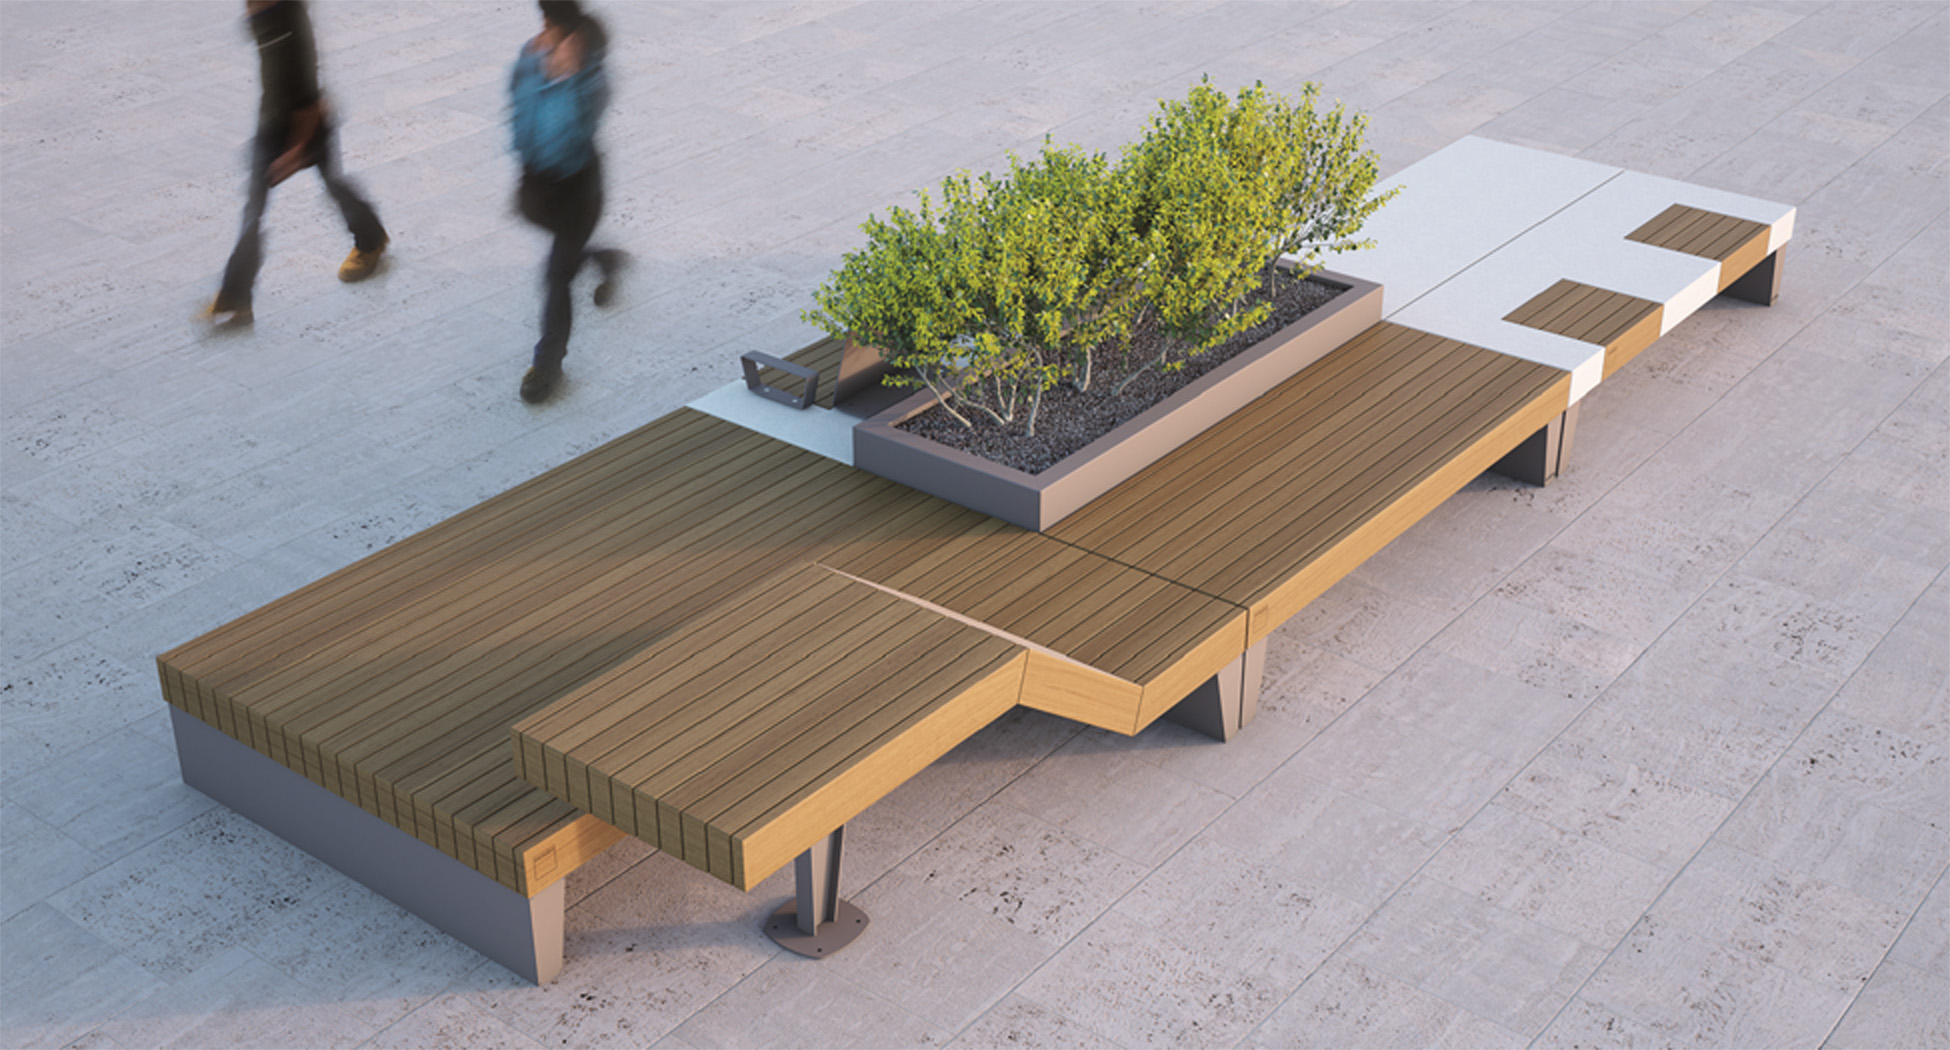 isolaurbana mobilier urbain design banc bois beton │fabricant METALCO